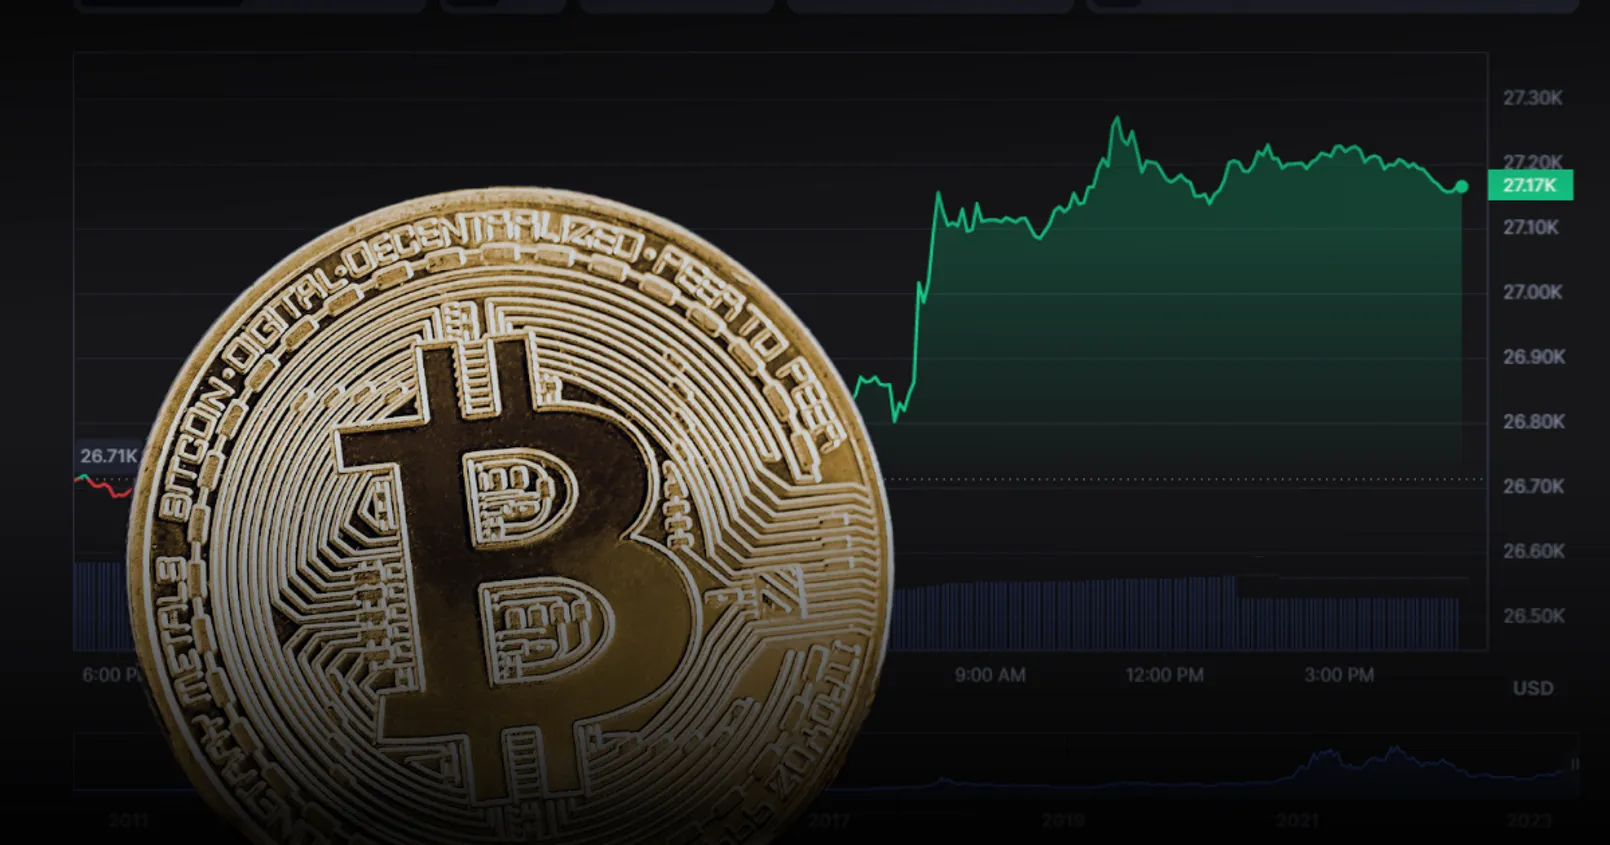 ราคา Bitcoin กลับมาแตะพื้นที่ 27,000 ครั้งแรกในรอบเกือบสัปดาห์ - คาดรับอานิสงค์ 1 สาเหตุนี้...